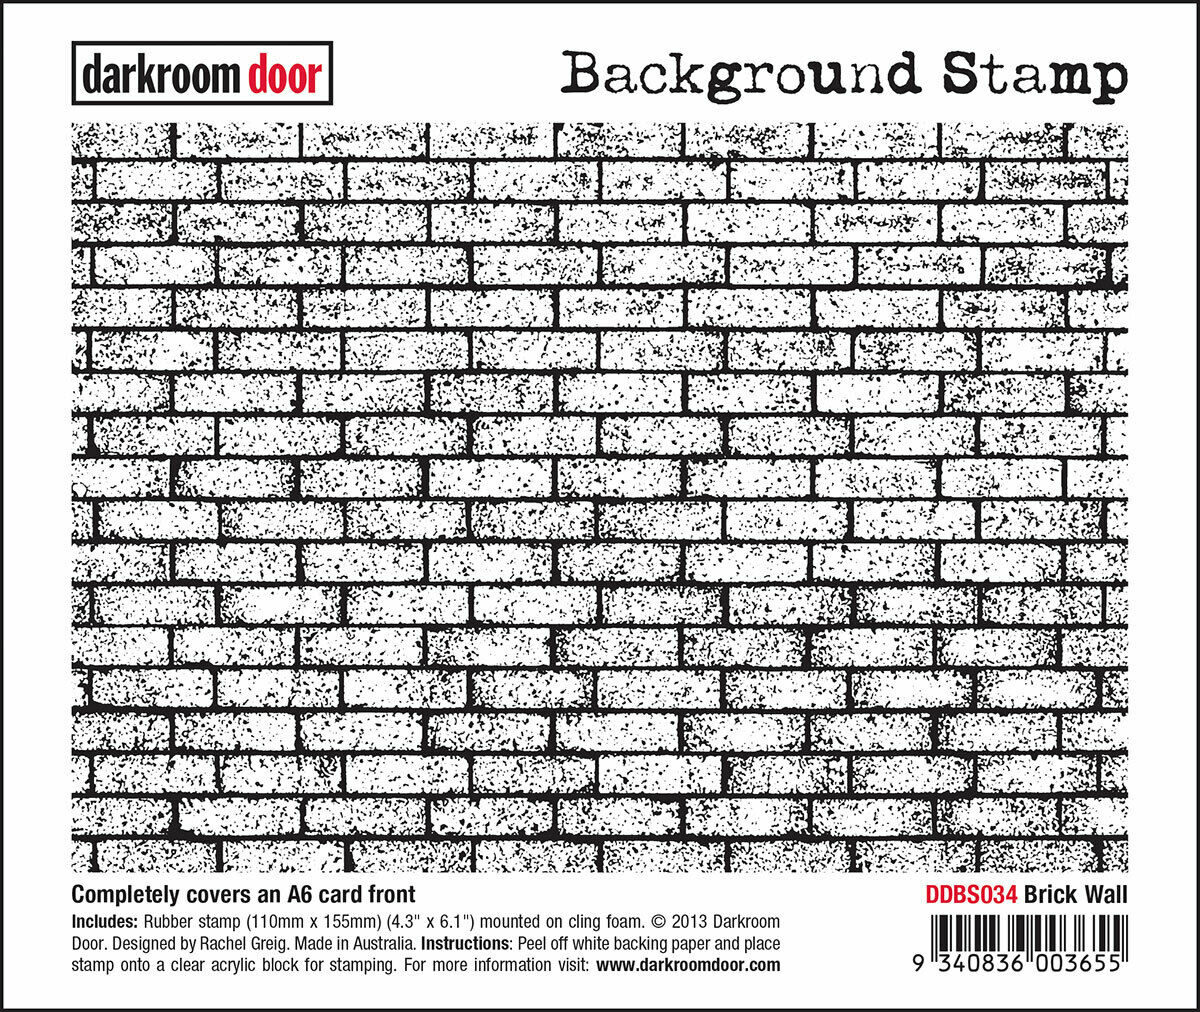 Darkroom Door Background Rubber Stamp Brick Wall 110 x 155mm